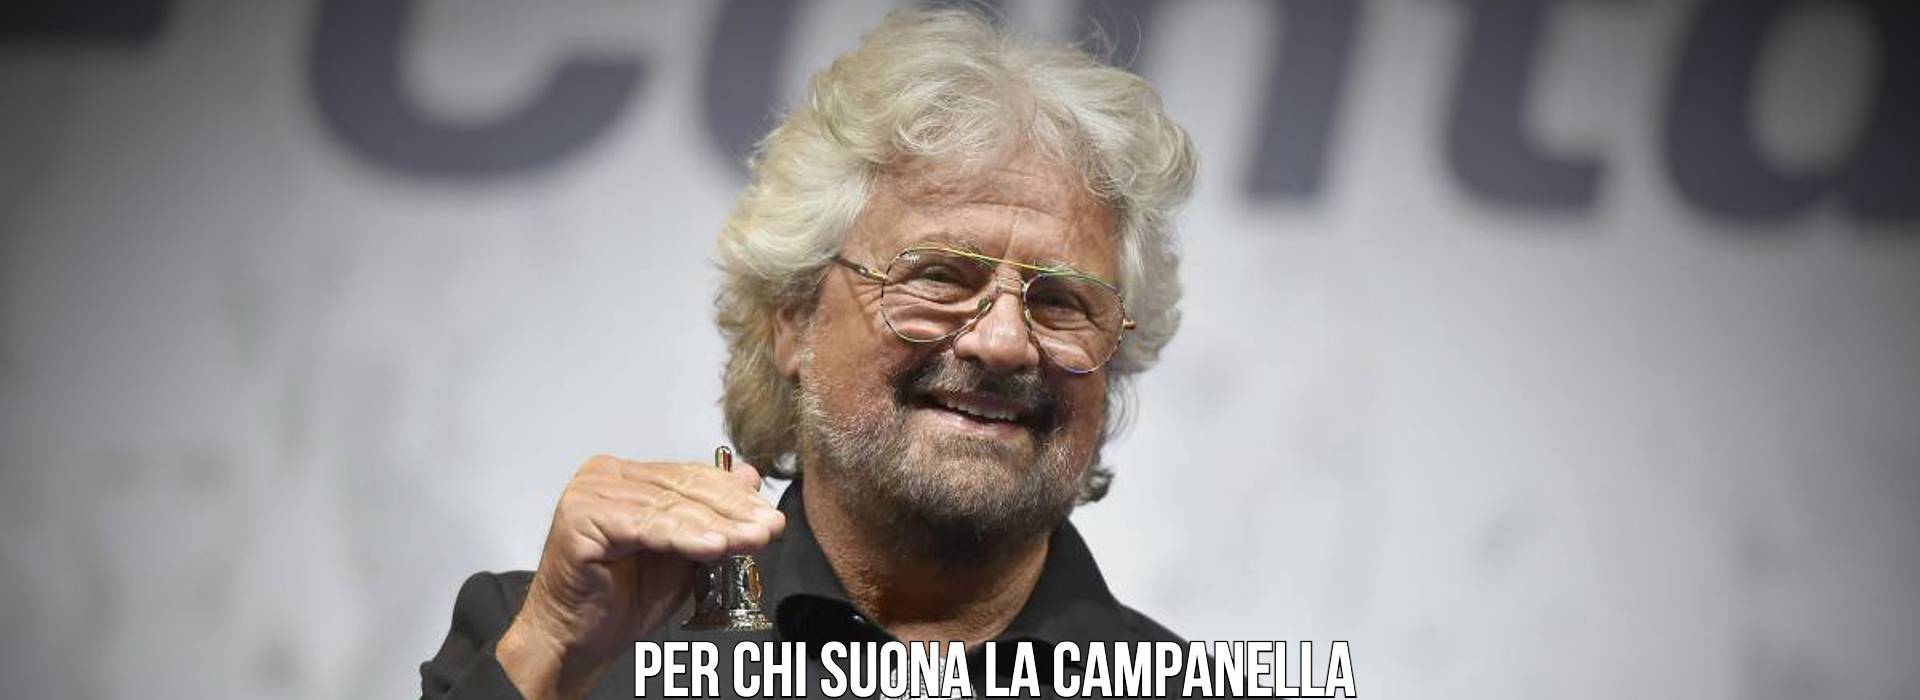 Beppe Grillo indagato per traffico di influenze. Tutte le grane giudiziarie del comico